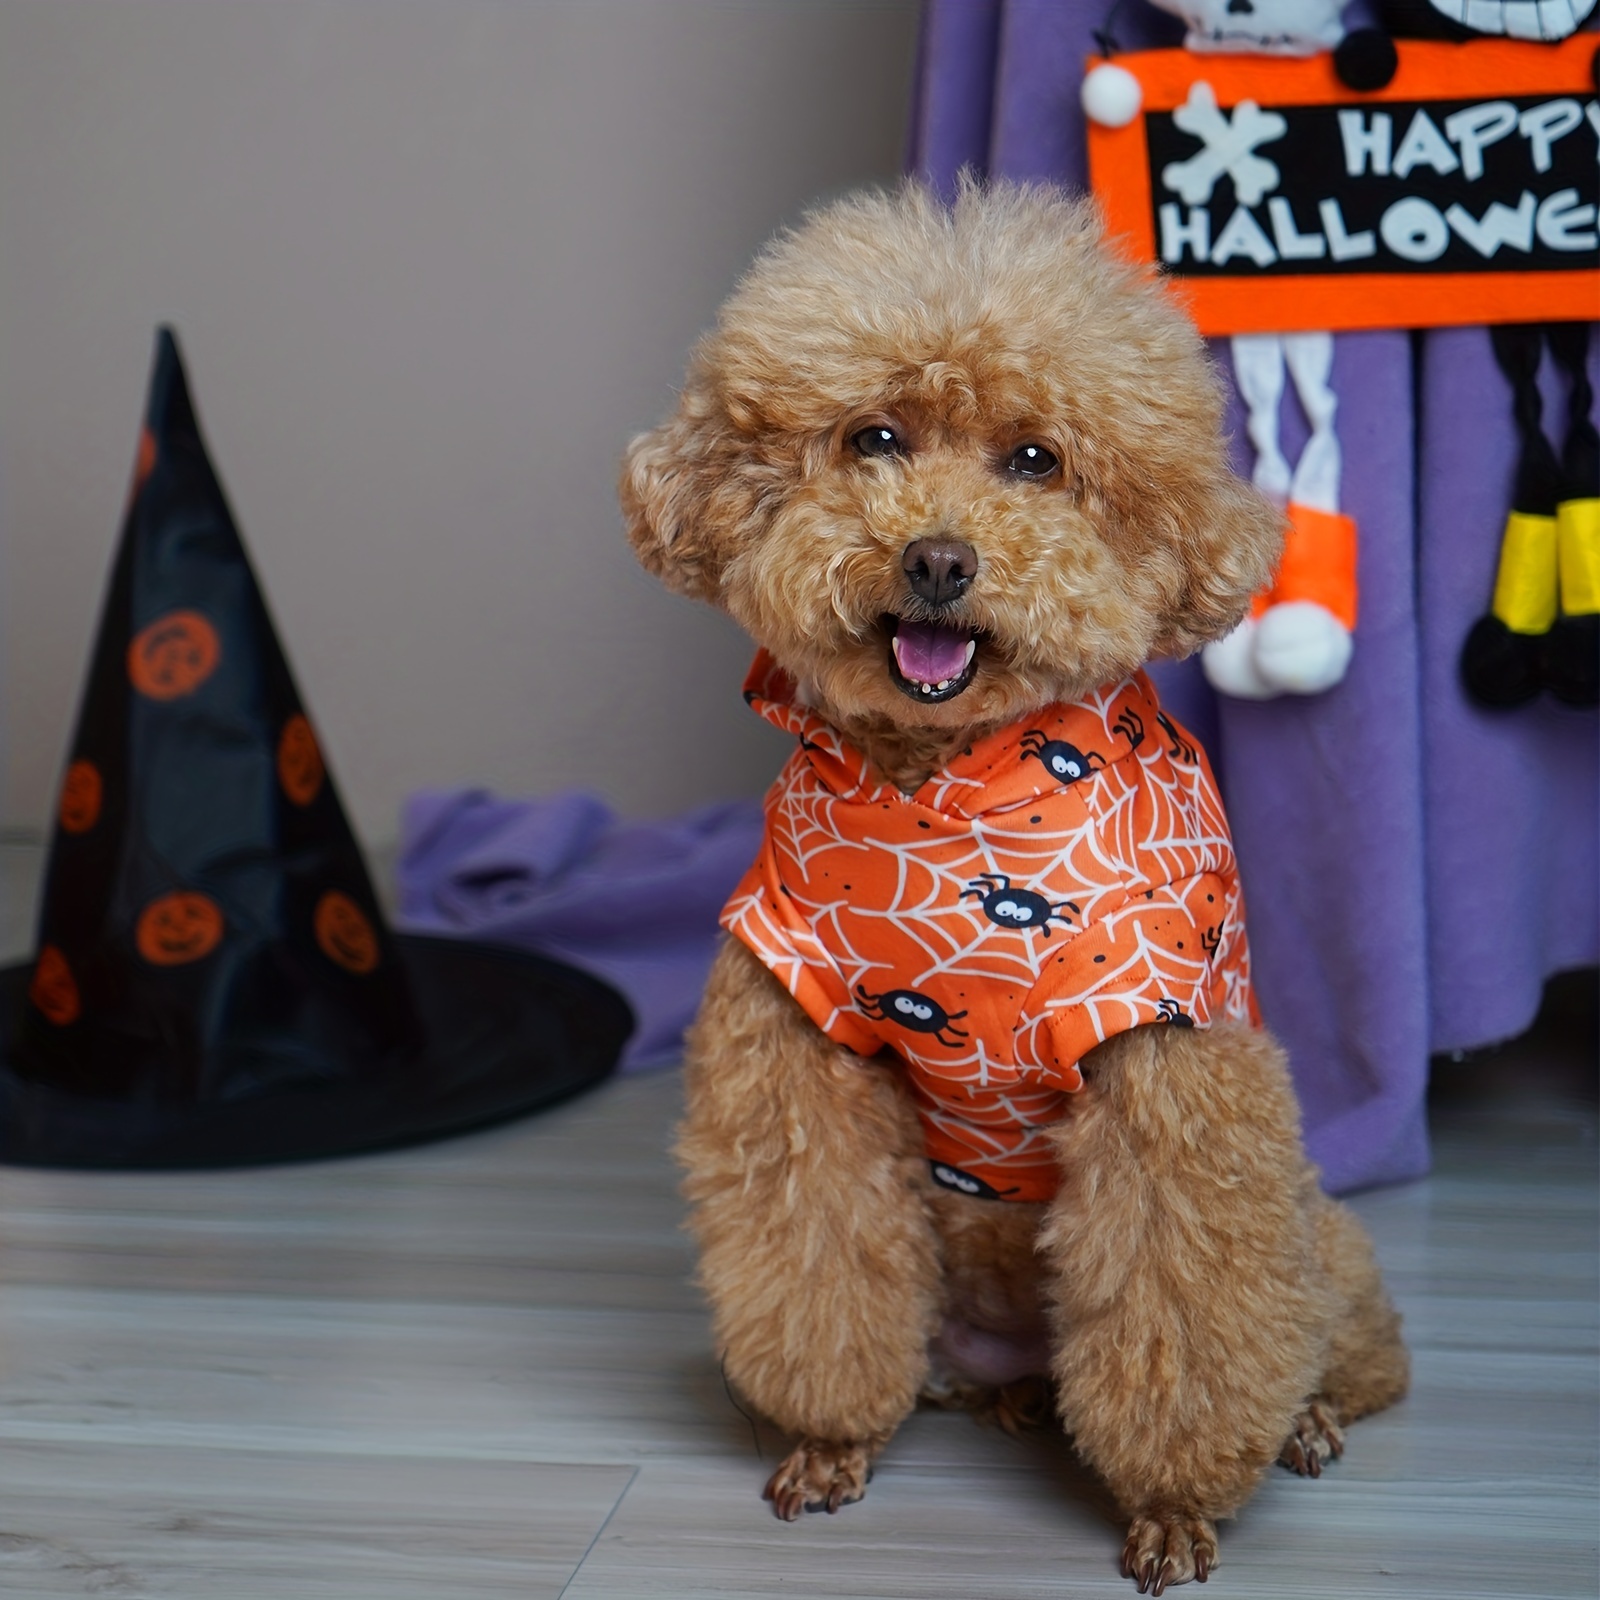  Halloween Costume for Pets Dogs Spiders Sweatshirt